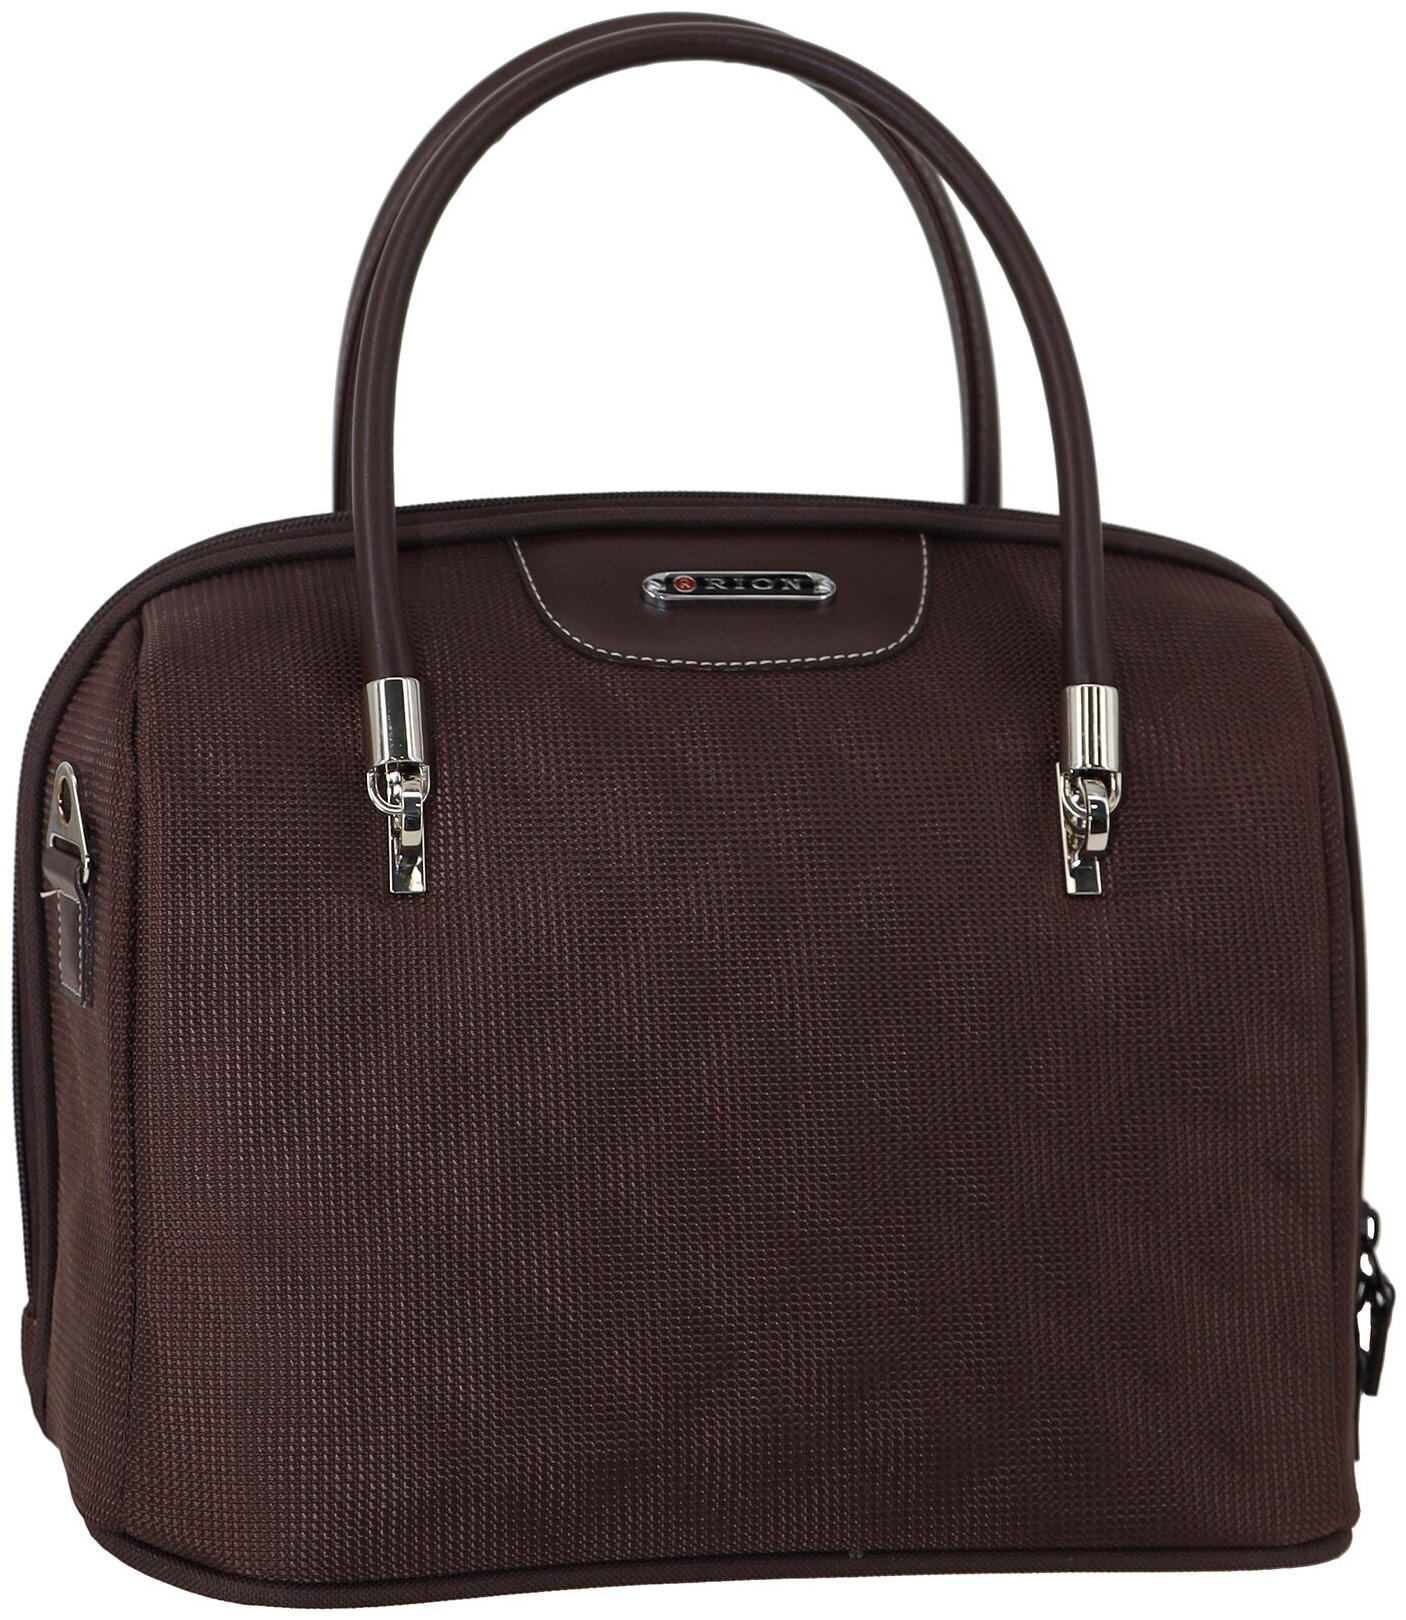 Женская дорожная сумка с ремнем на ручку чемодана Рион+ (RION+) / ручная кладь для самолета / саквояж, R246, Тканевая, 13 литров, коричневый-ромб